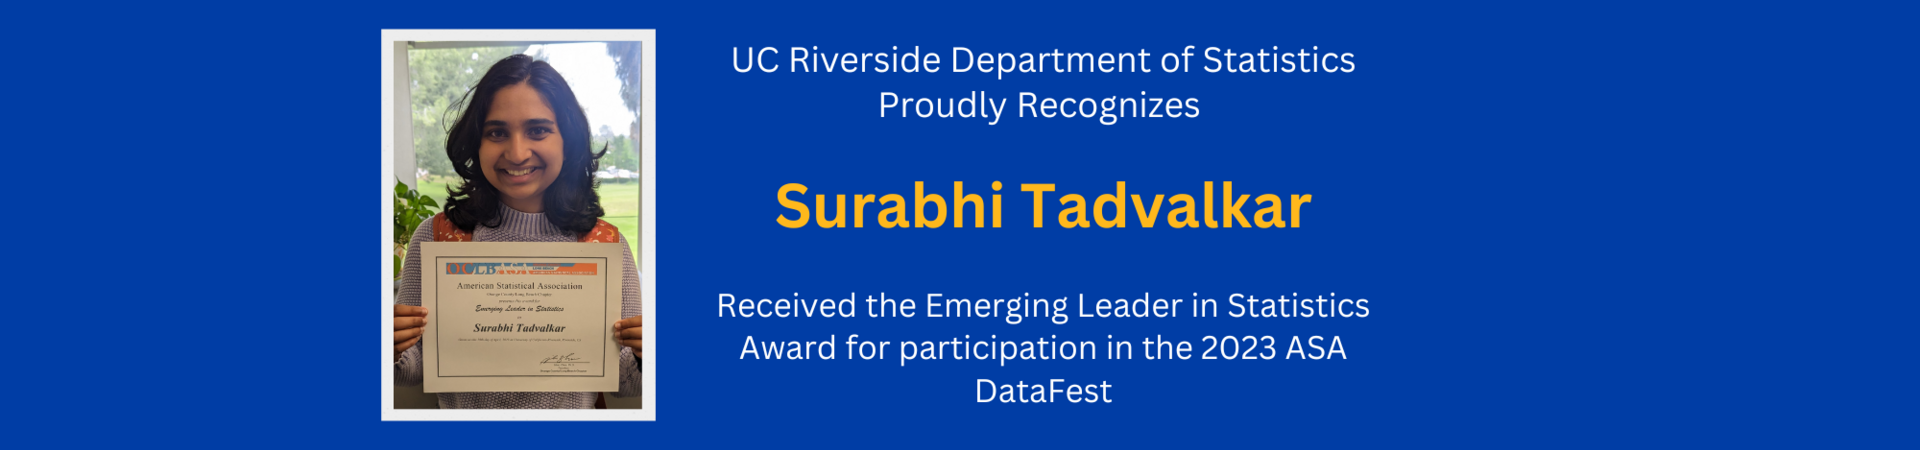 Surabhi Tadvalkar awarded the Emerging Leader in Statistics